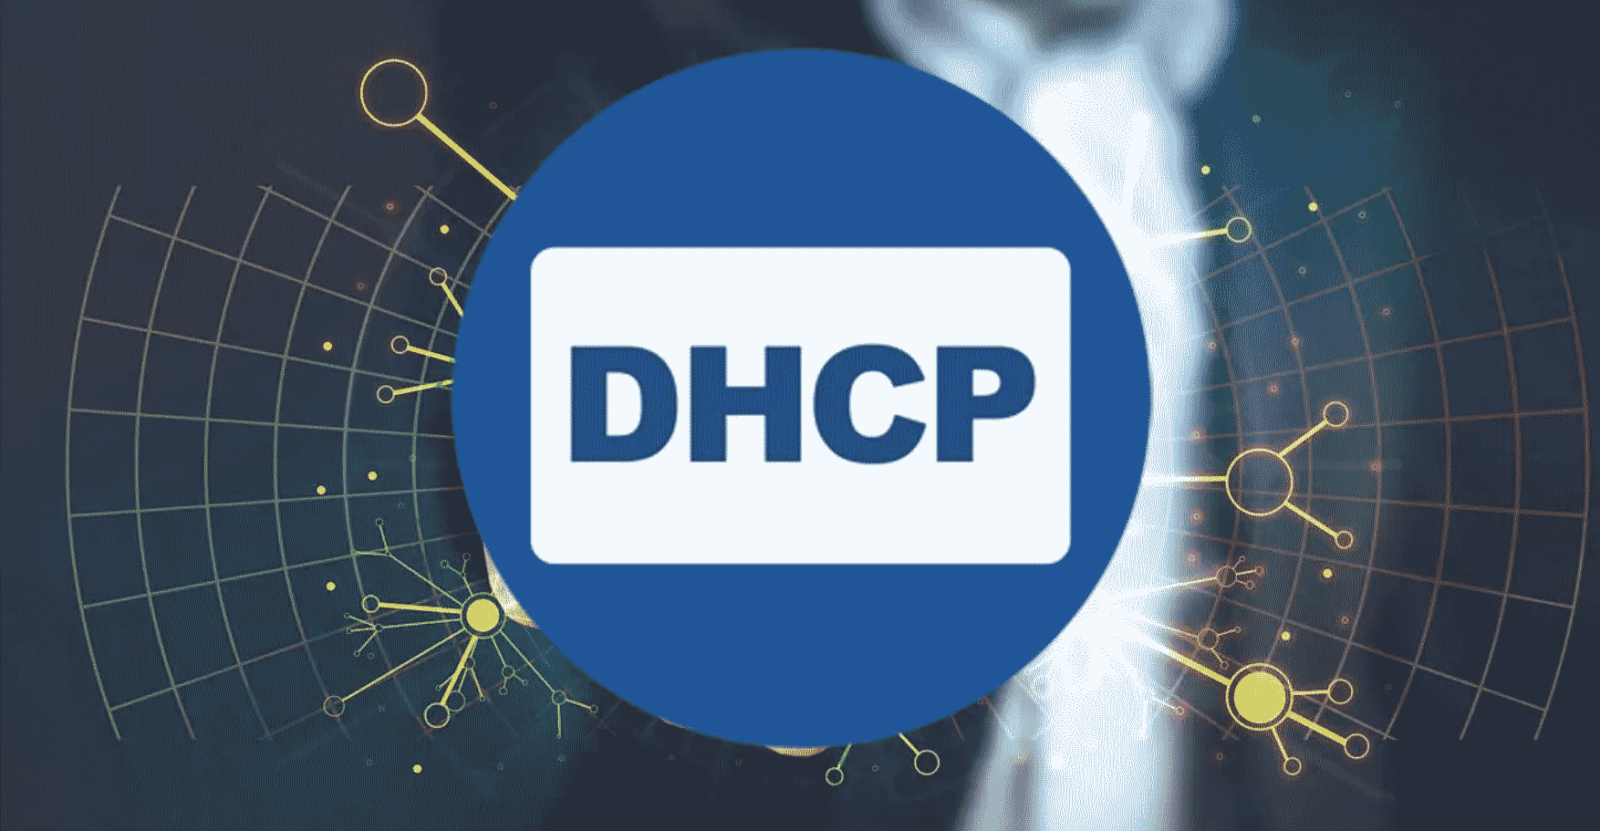 ¿Qué es DHCP?